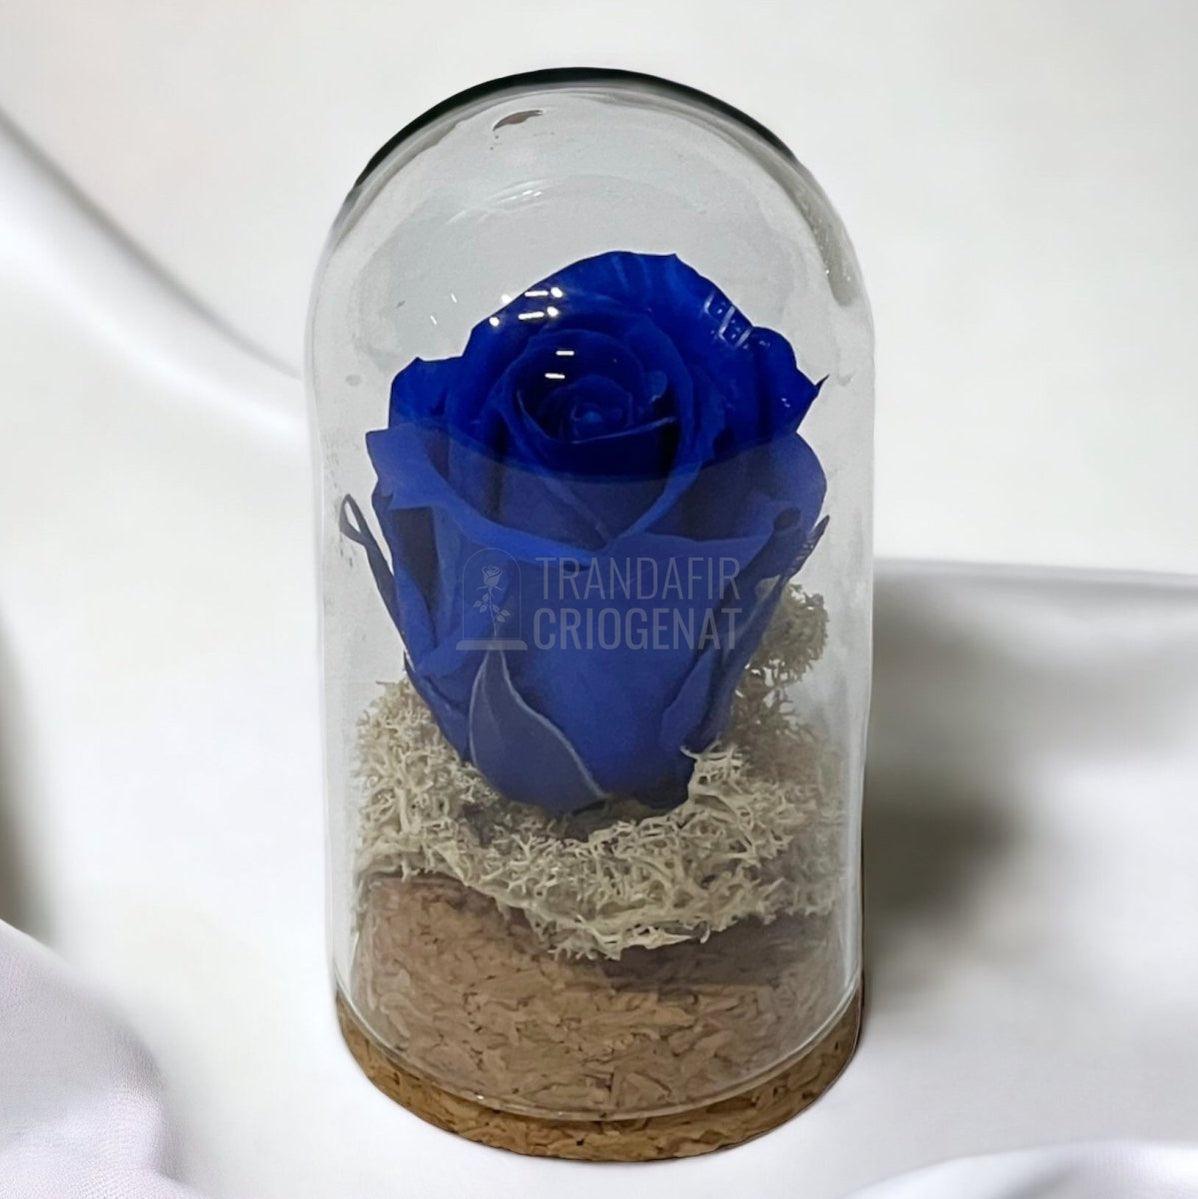 Trandafir Criogenat albastru inchis in cupola sticla 5x9,5cm (marturie) - Trandafir-Criogenat.ro